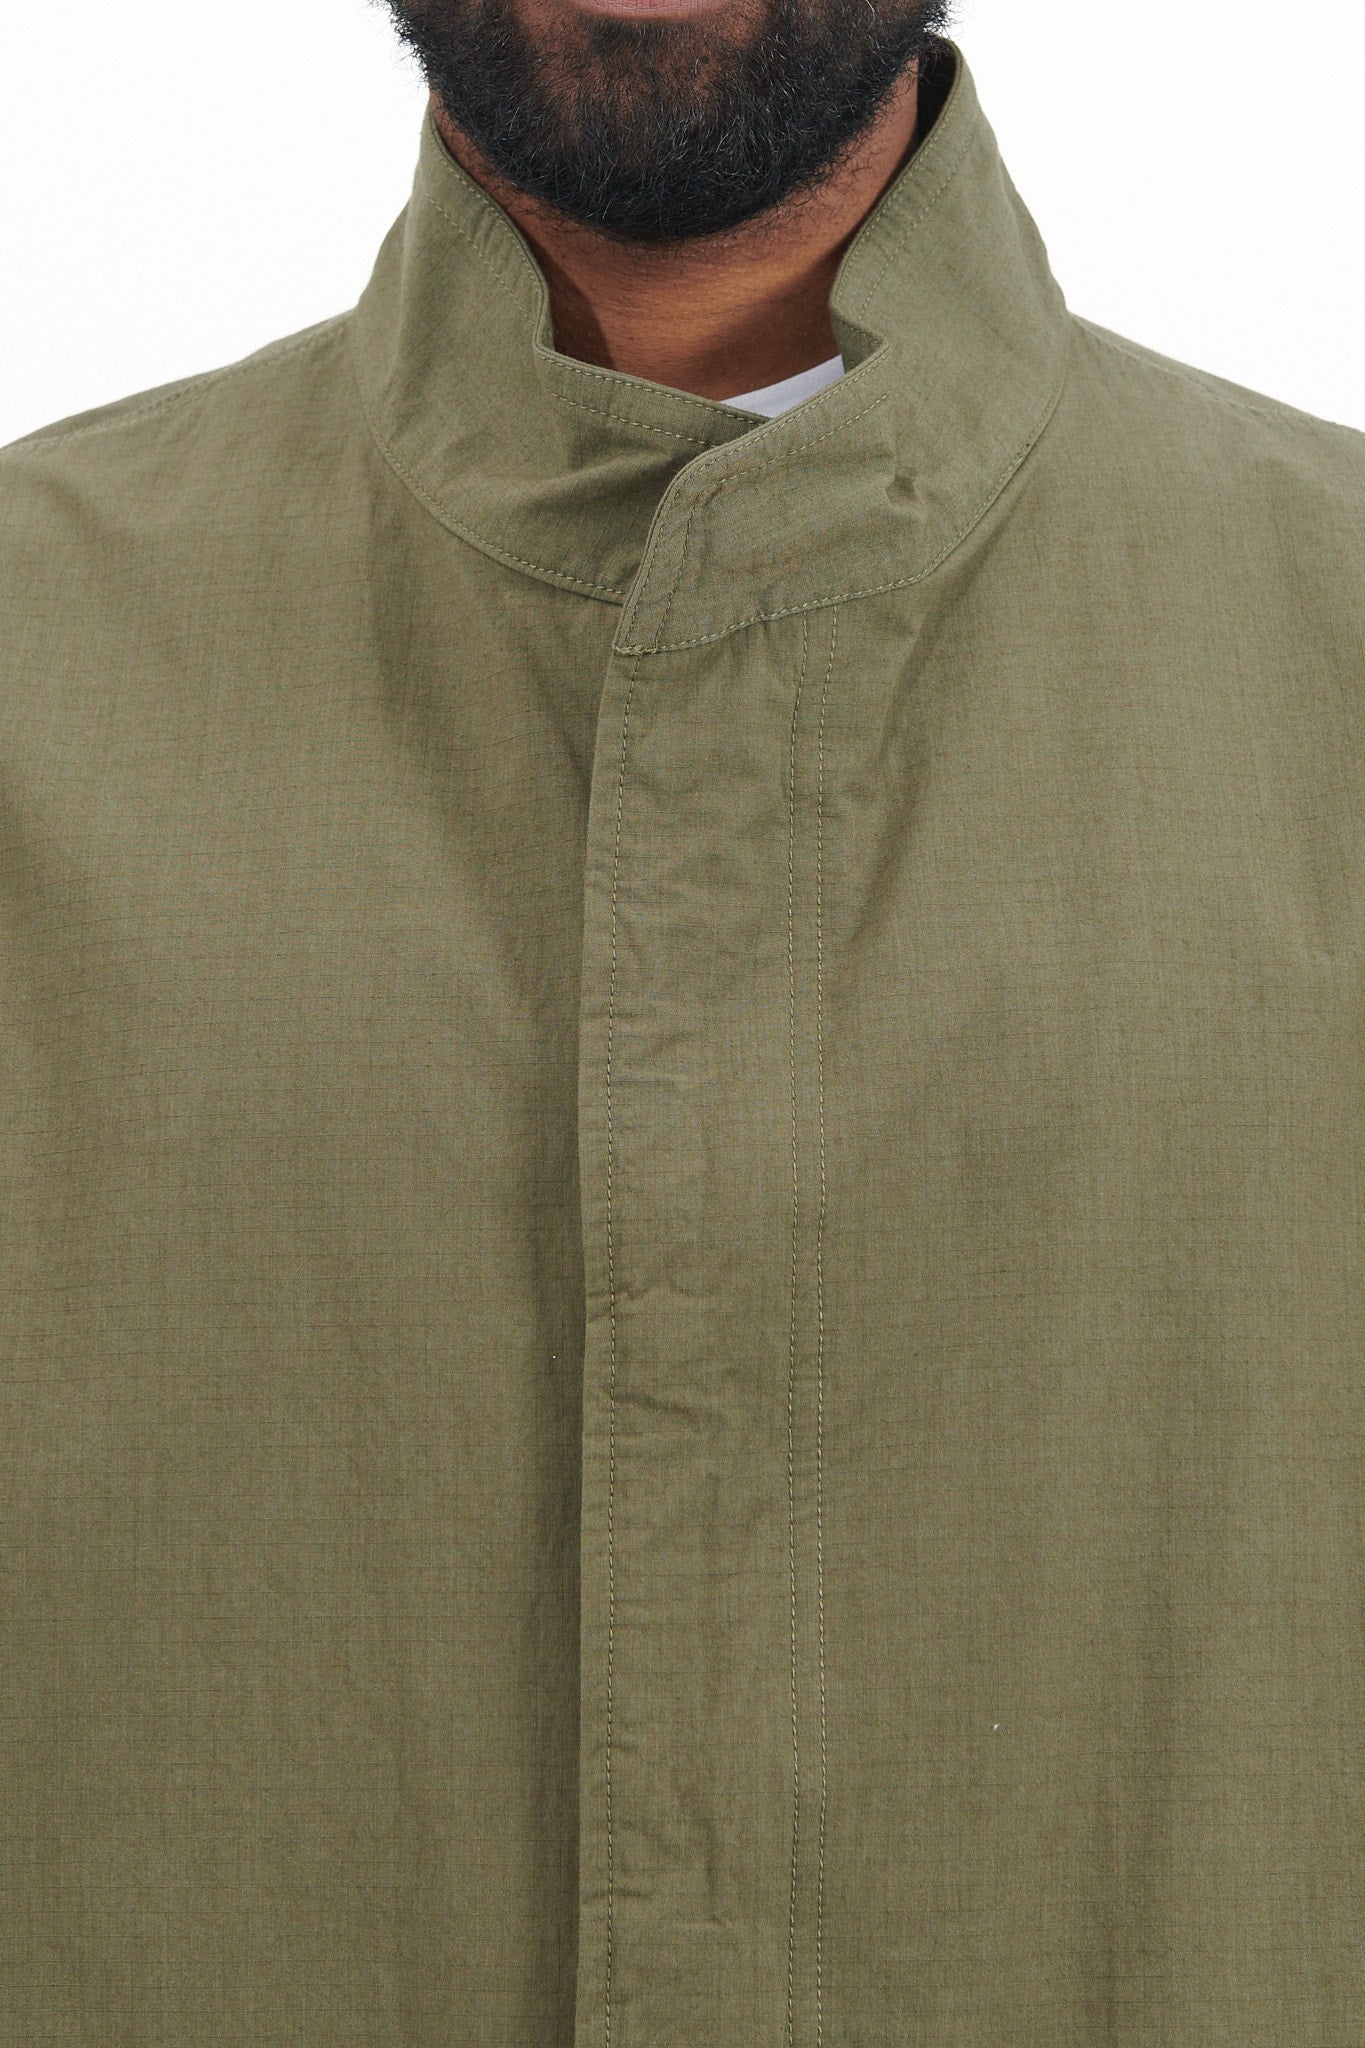 Military Jacket Co/Ny Ripstop - Olive